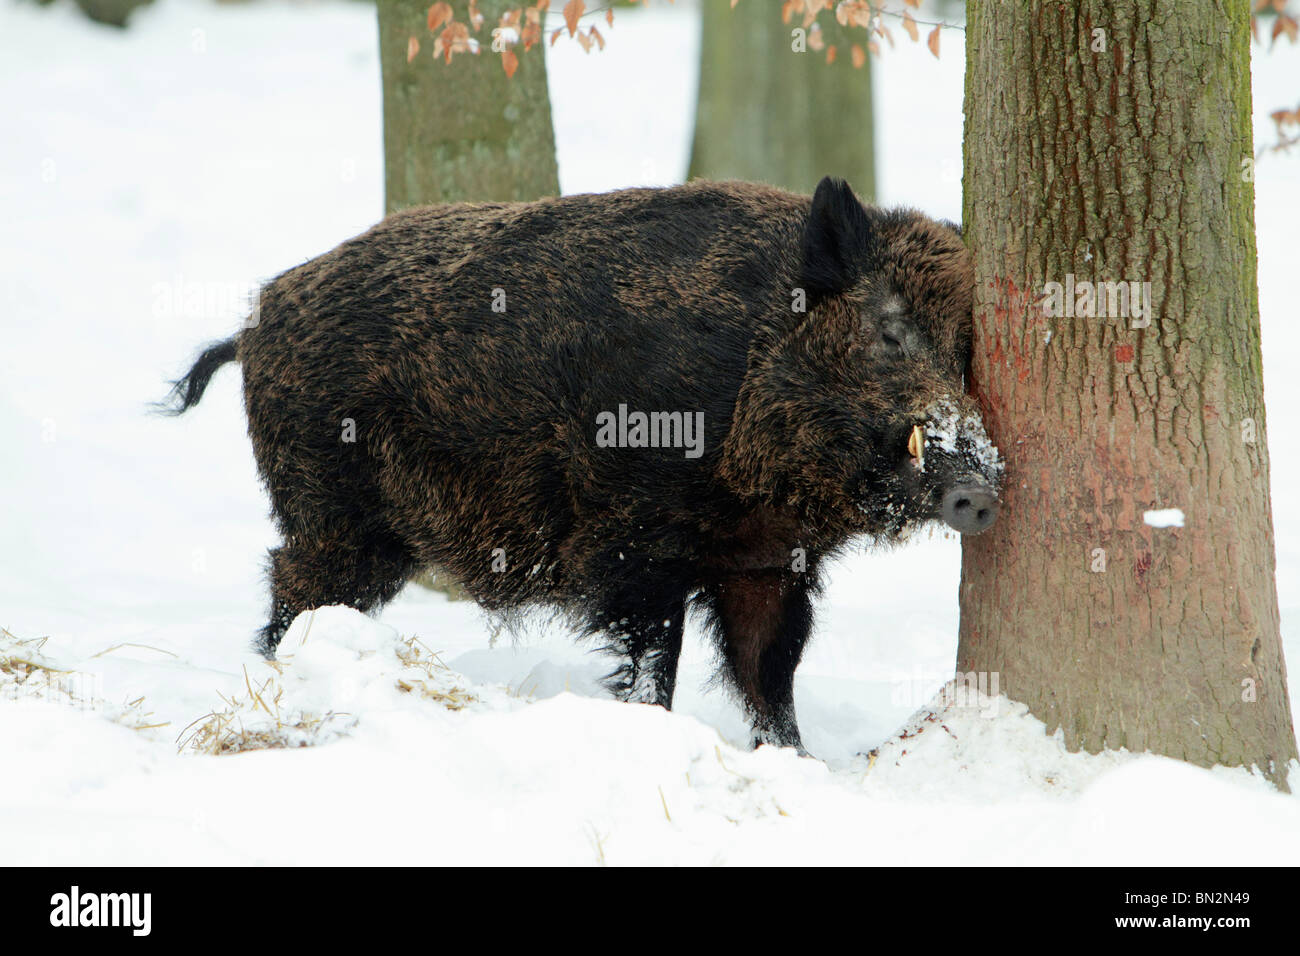 Cochon sauvage européenne, (Sus scrofa) mâle d'un animal ou d'un sanglier, se gratter la tête contre tige de l'arbre, dans la forêt couverte de neige, Allemagne Banque D'Images